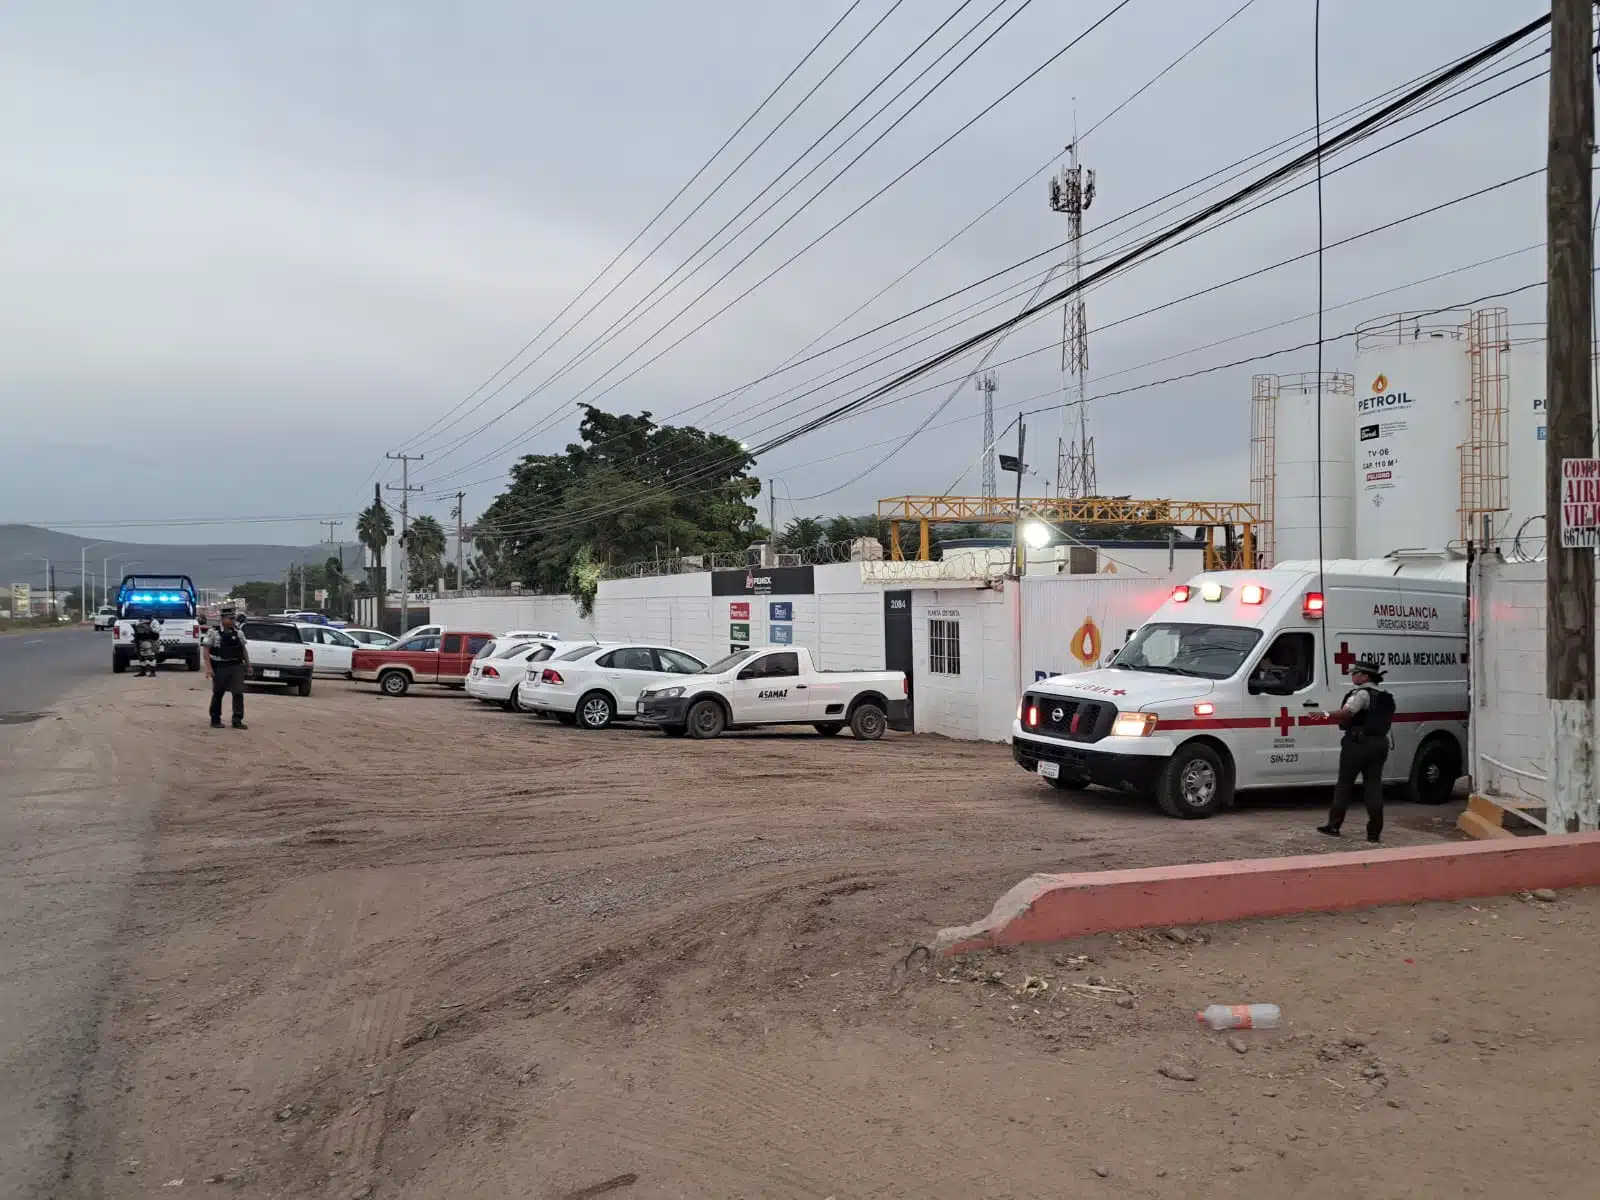 El accidente ocurrió en el libramiento sur Benito Juárez, mejor conocido como La Costerita, en el sector sur de Culiacán.